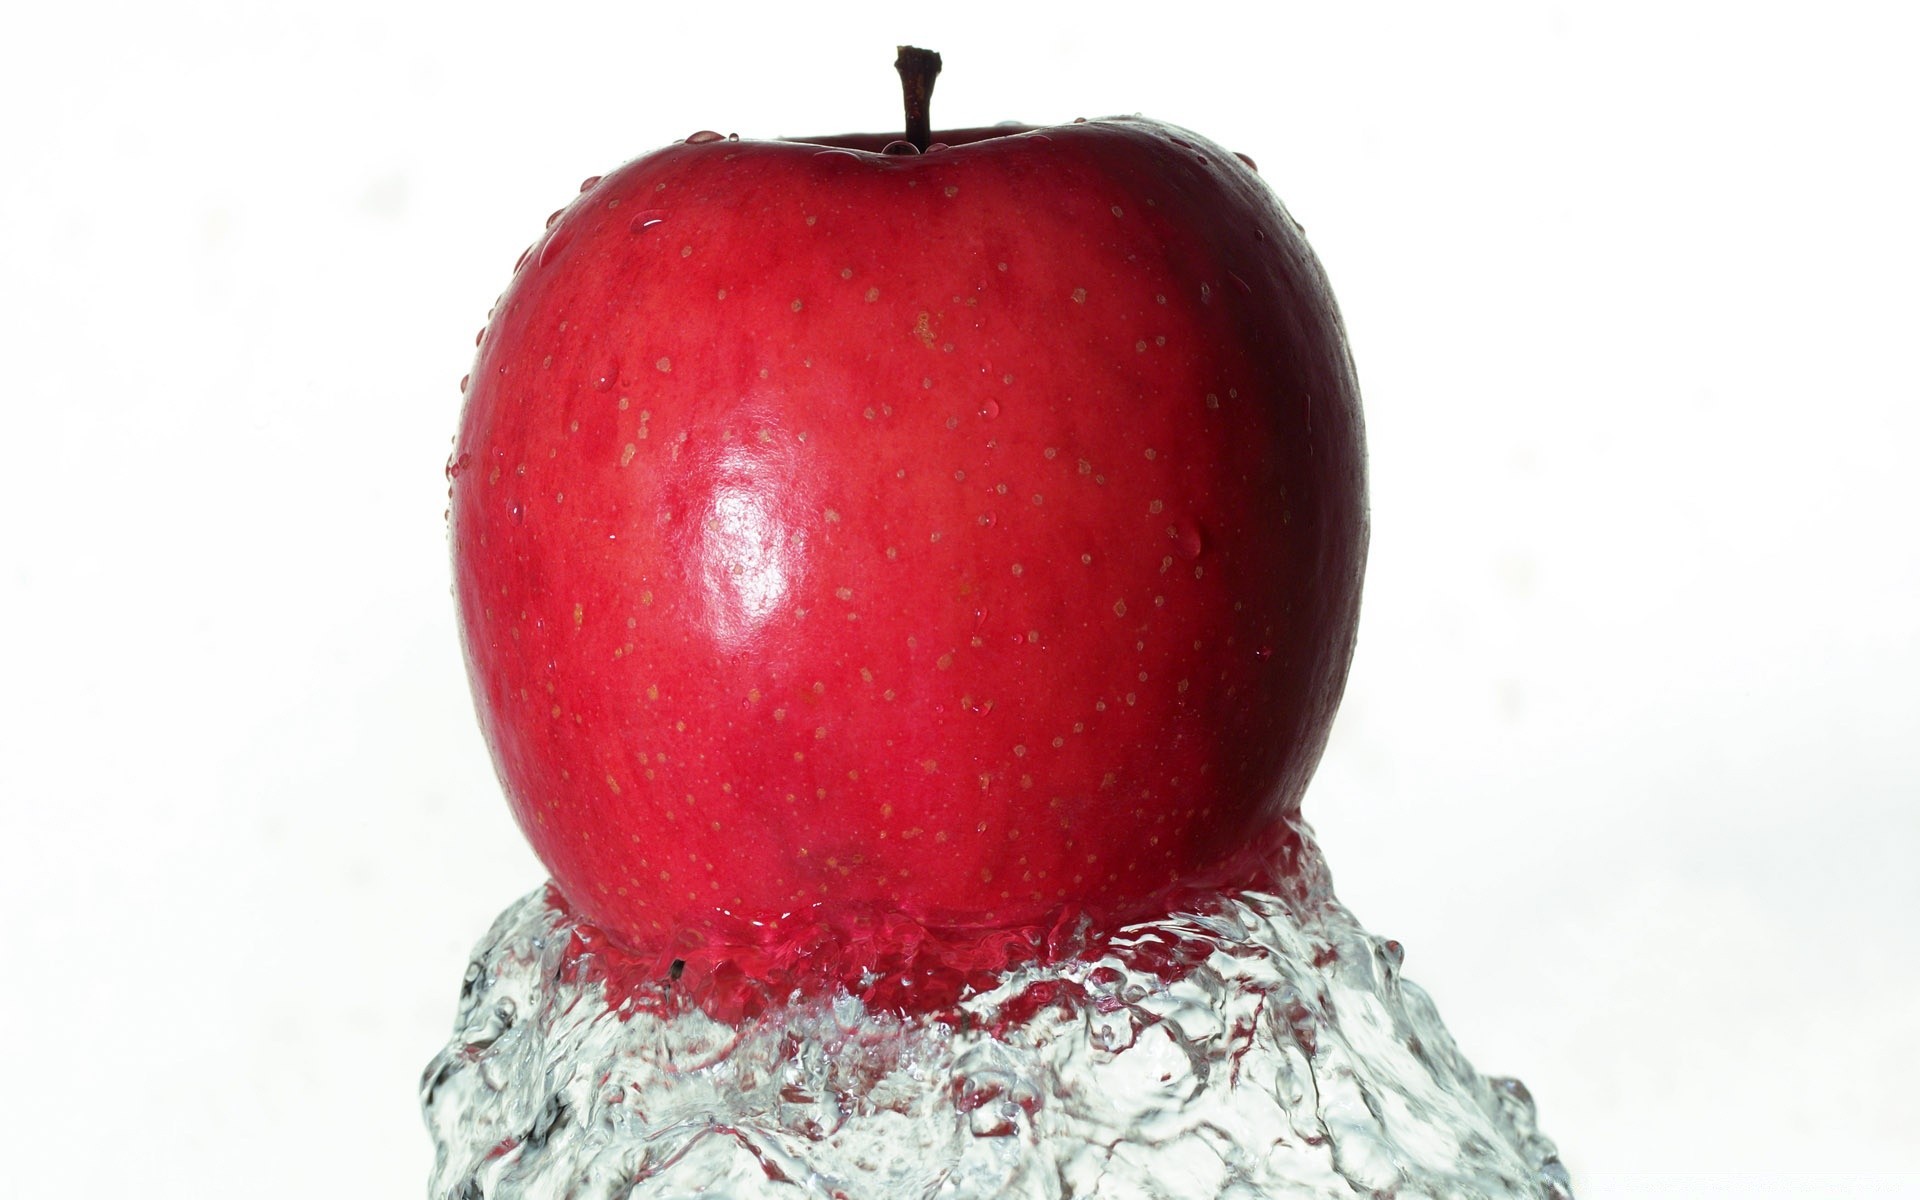 капельки и вода еда фрукты яблоко здоровья здоровый сочные мокрый